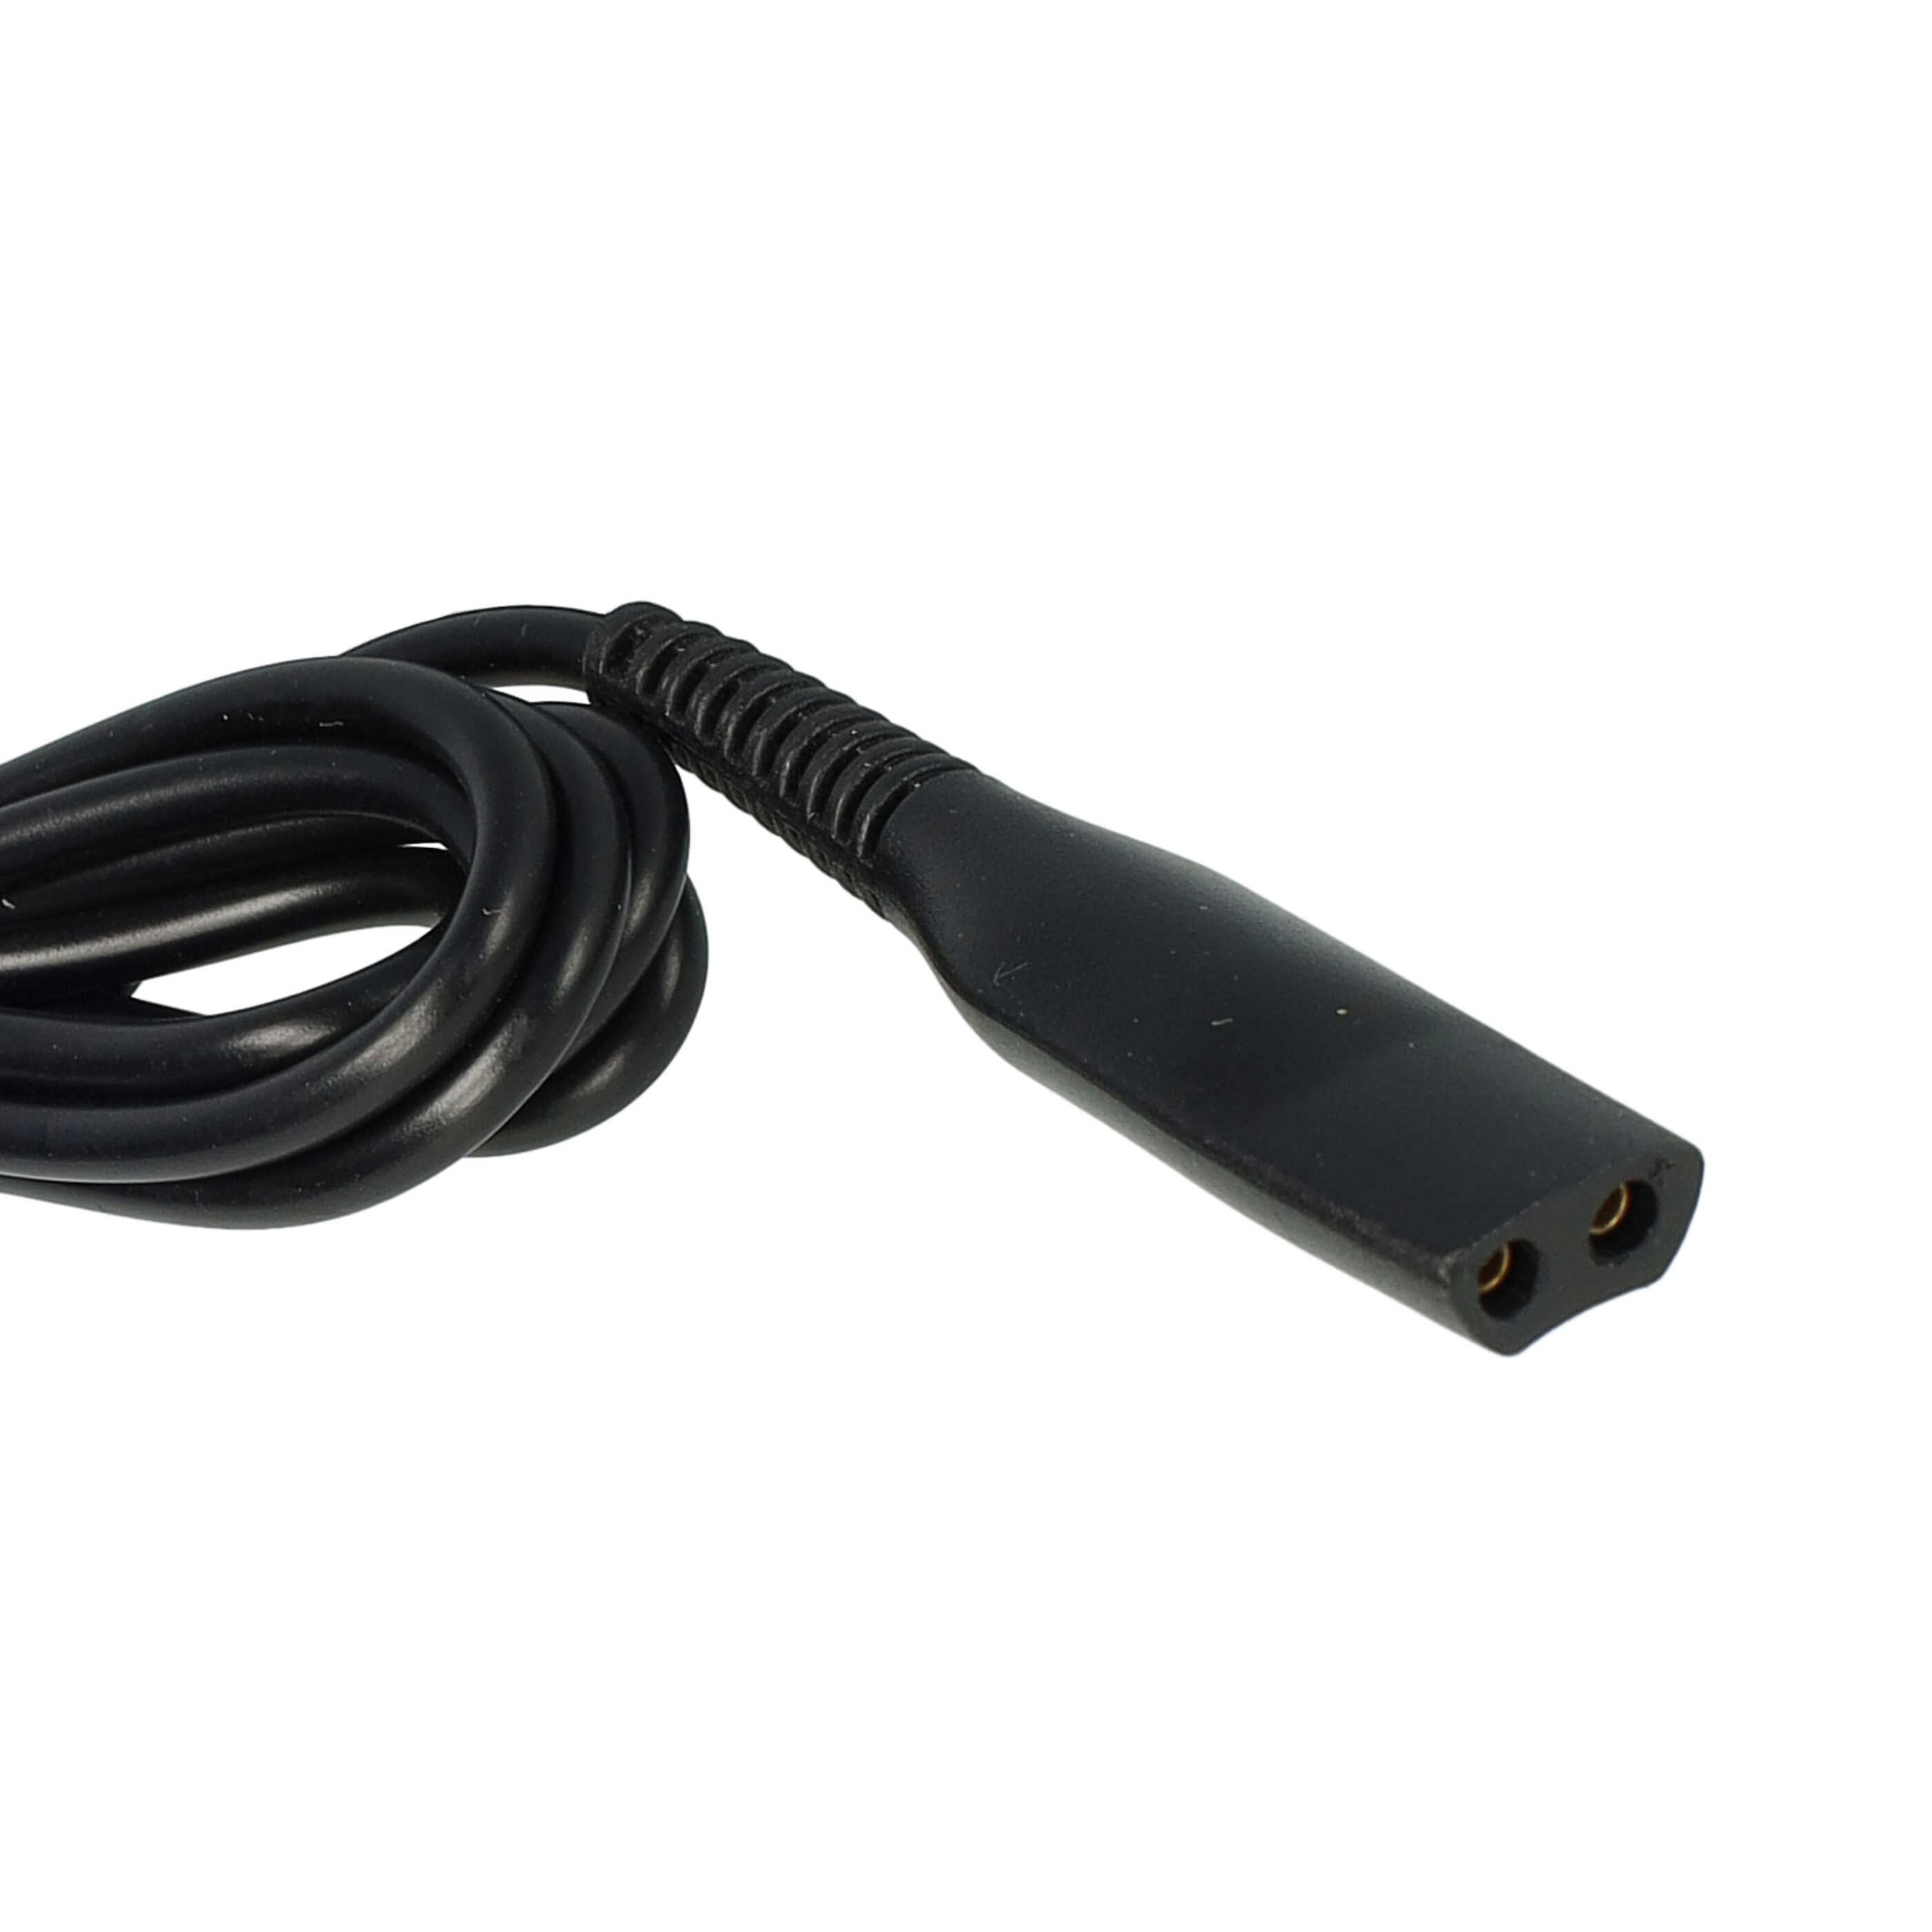 Cable de carga USB para afeitadoras, depiladoras, cepillo de dientes, etc. Braun, Oral-B HC20 - 120 cm